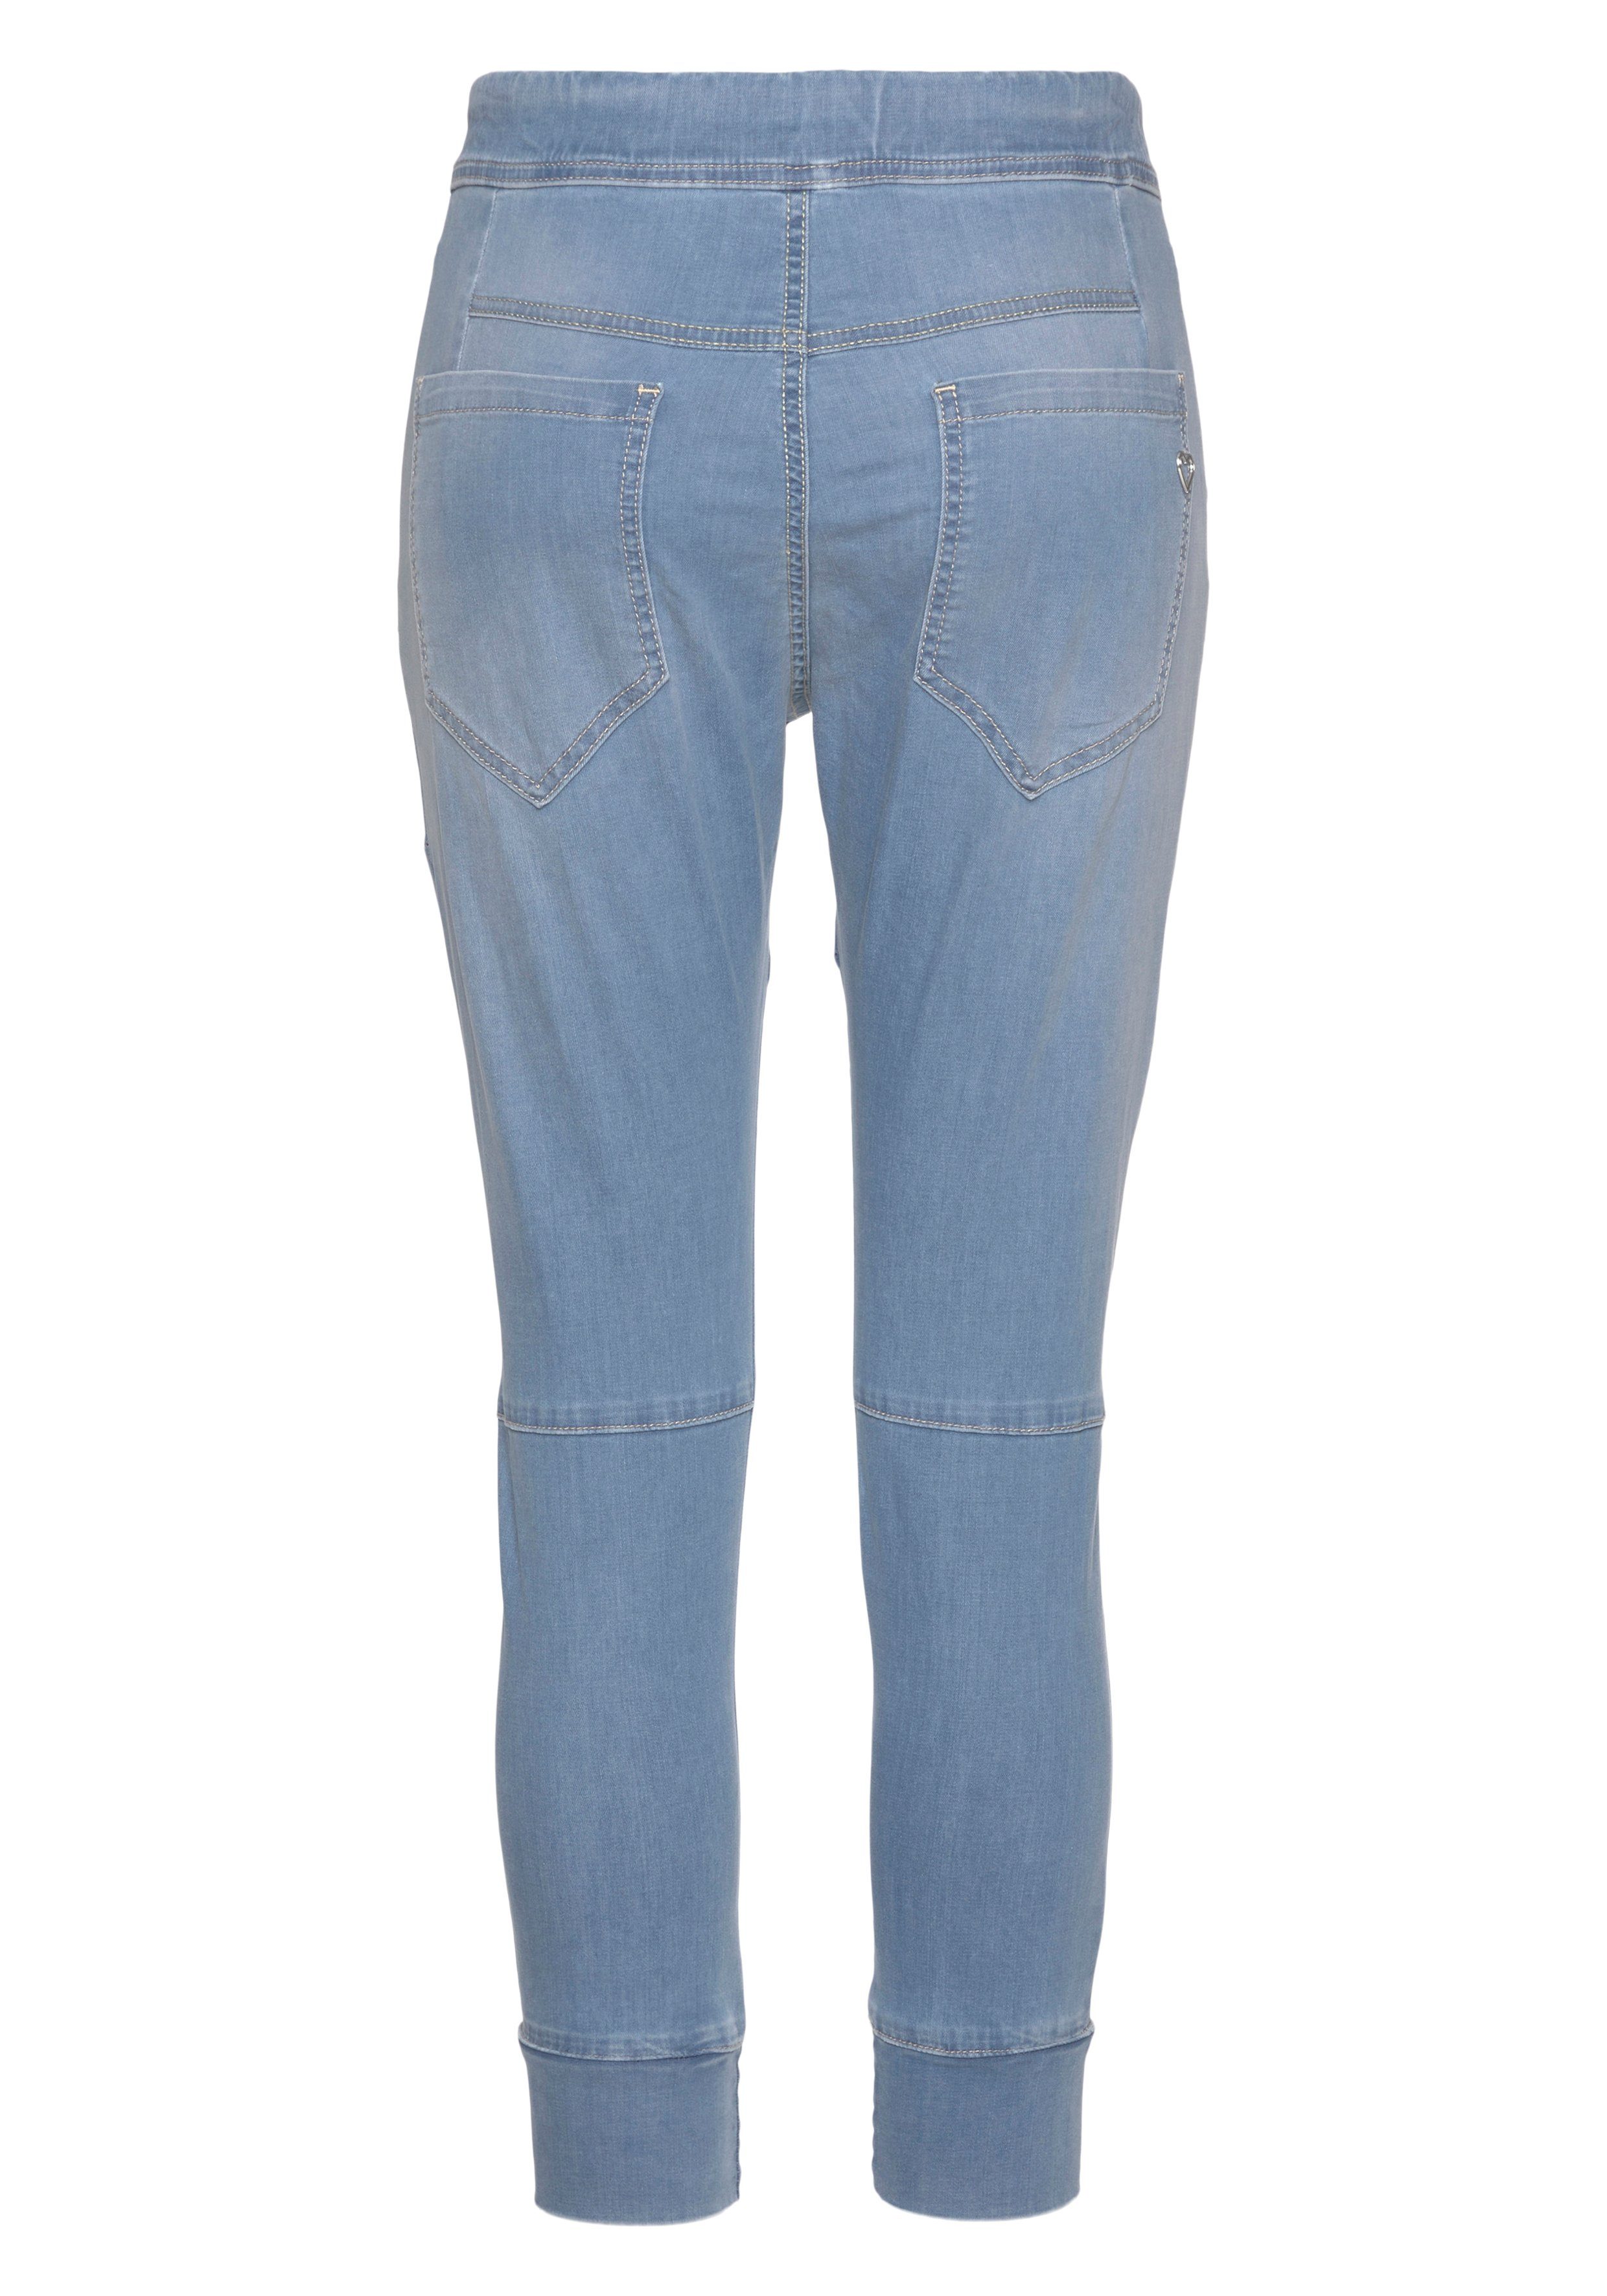 Damen Jeans Please Jeans Jogg Pants P51G im Relax-Fit mit praktischem Gummizug-Bund